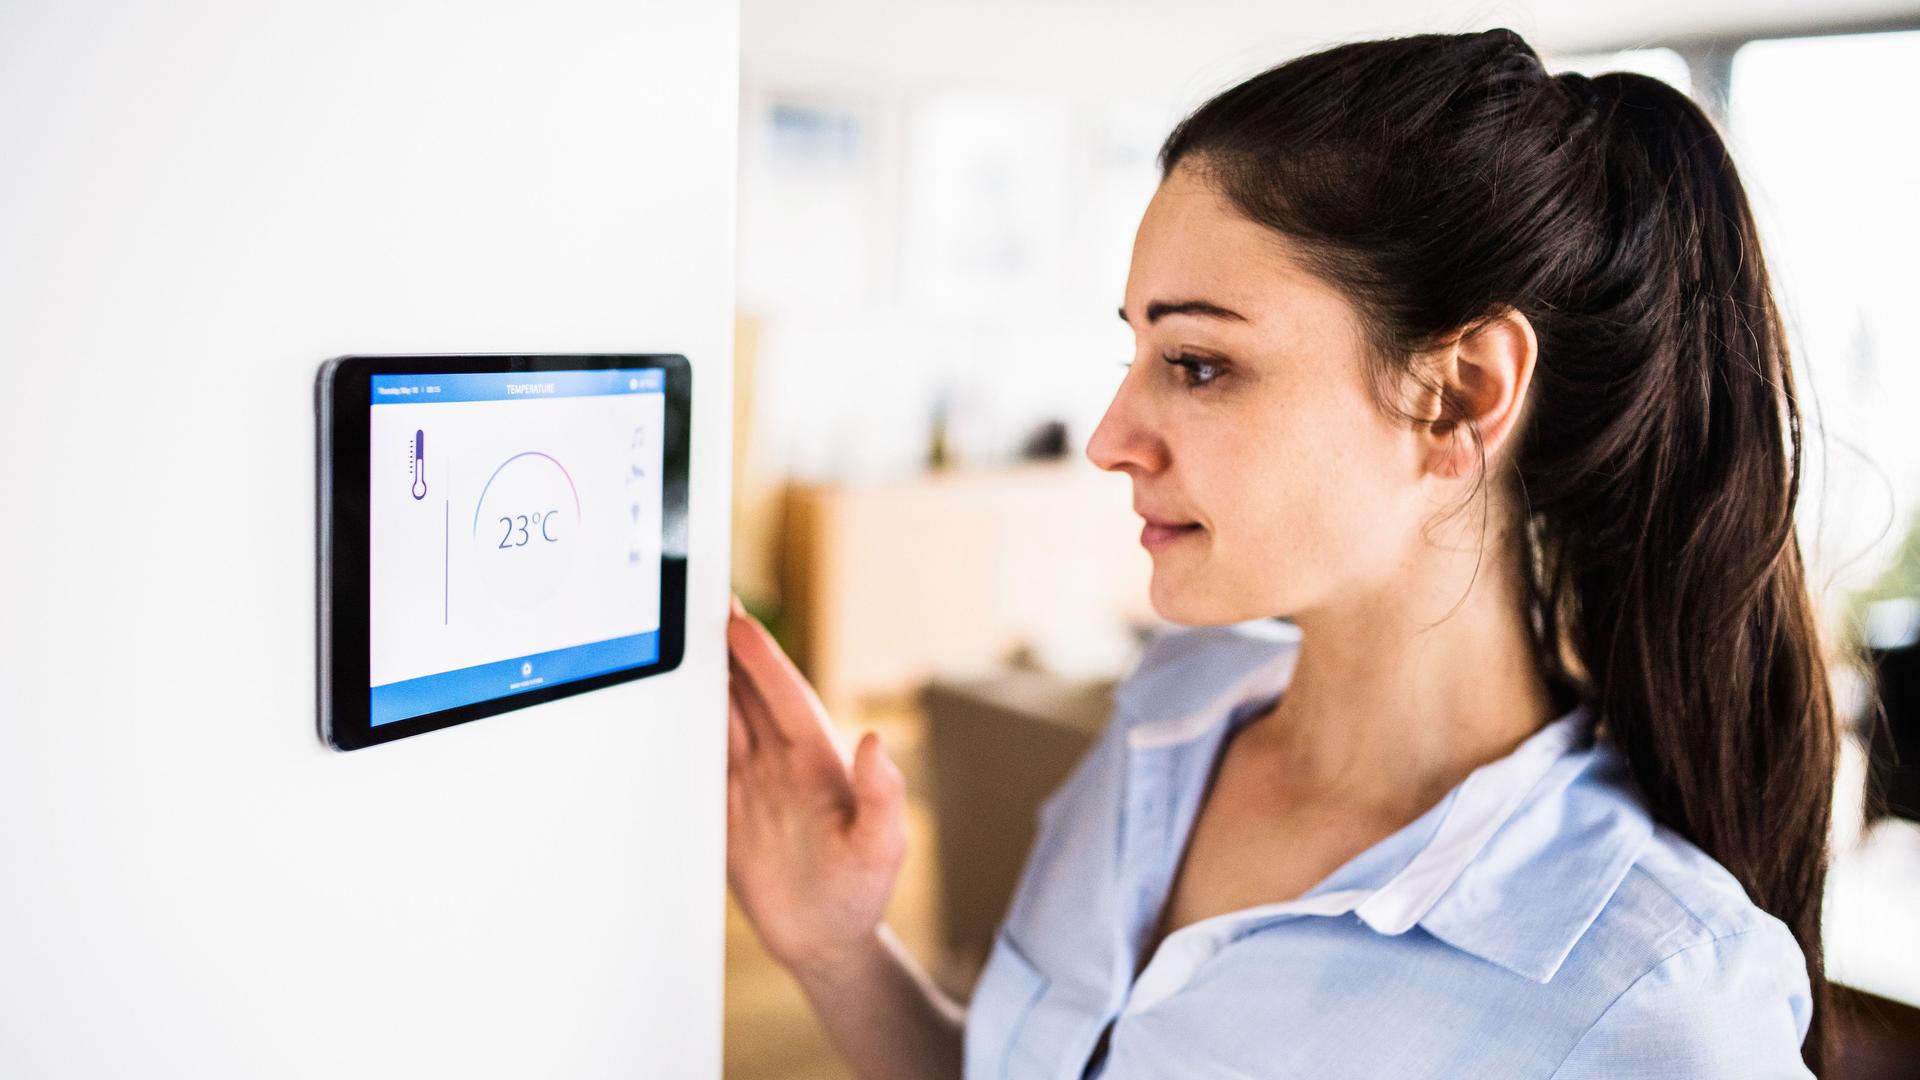 Eine Frau schaut auf ein Tablet an der Wand mit Smart Home-Bildschirm. Das Display zeigt die Temperatur 23°C.